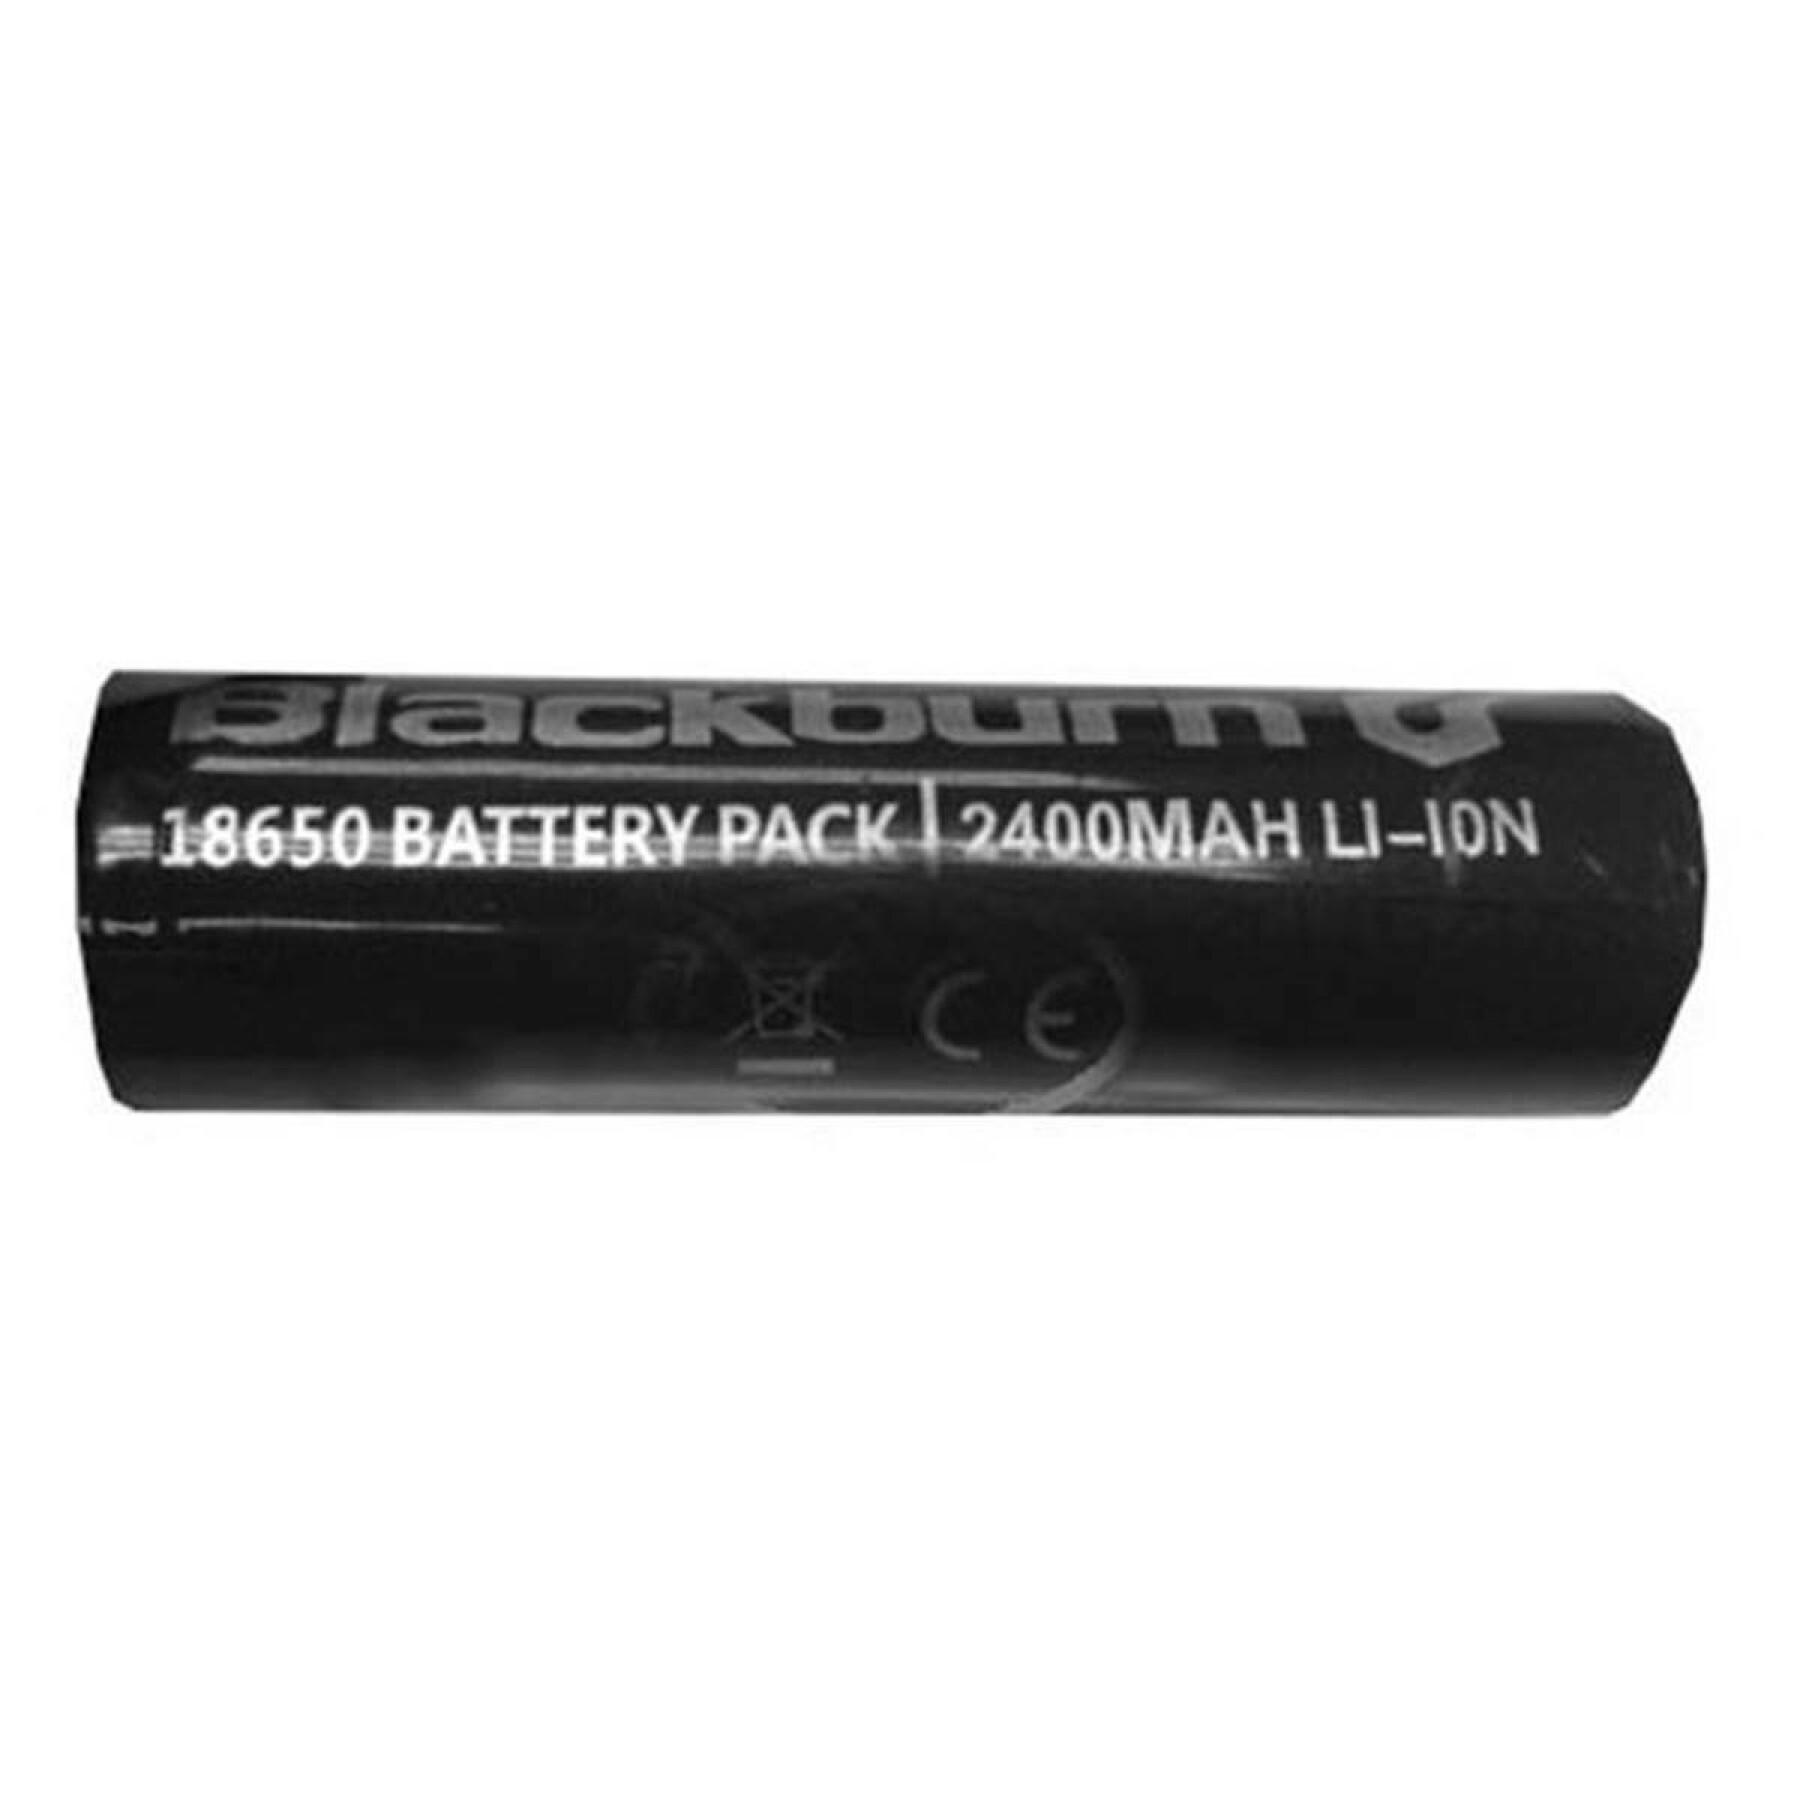 Illuminazione a batteria Blackburn Central 300/700